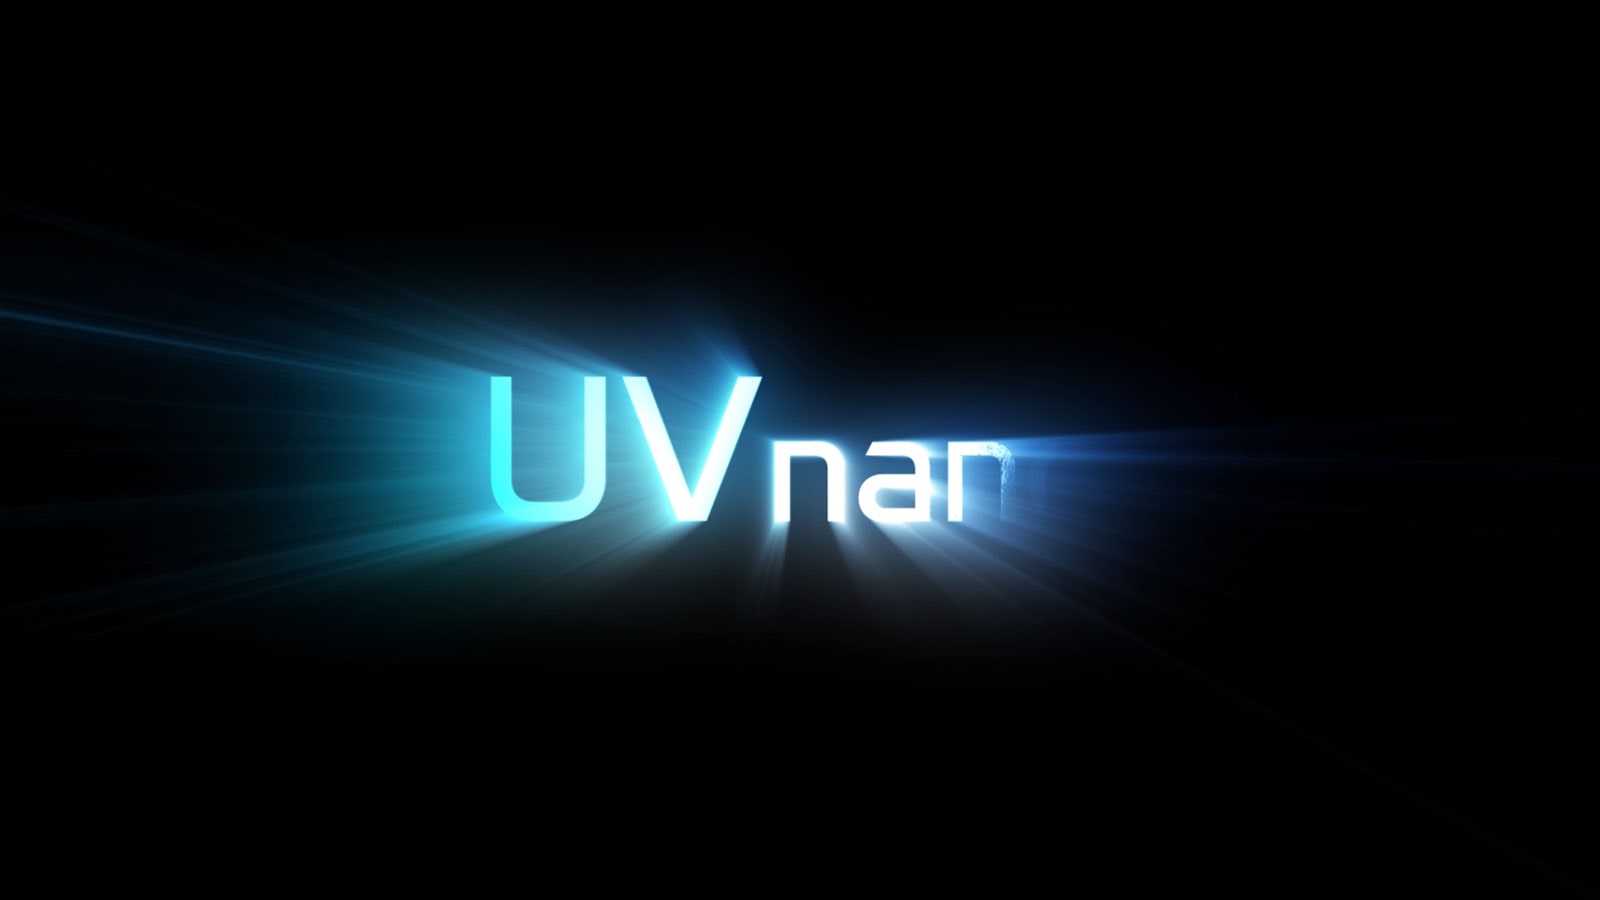 Logo UV nano tỏa sáng và cắt ảnh cận cảnh tai nghe đang được khử trùng bằng đèn UV nano.